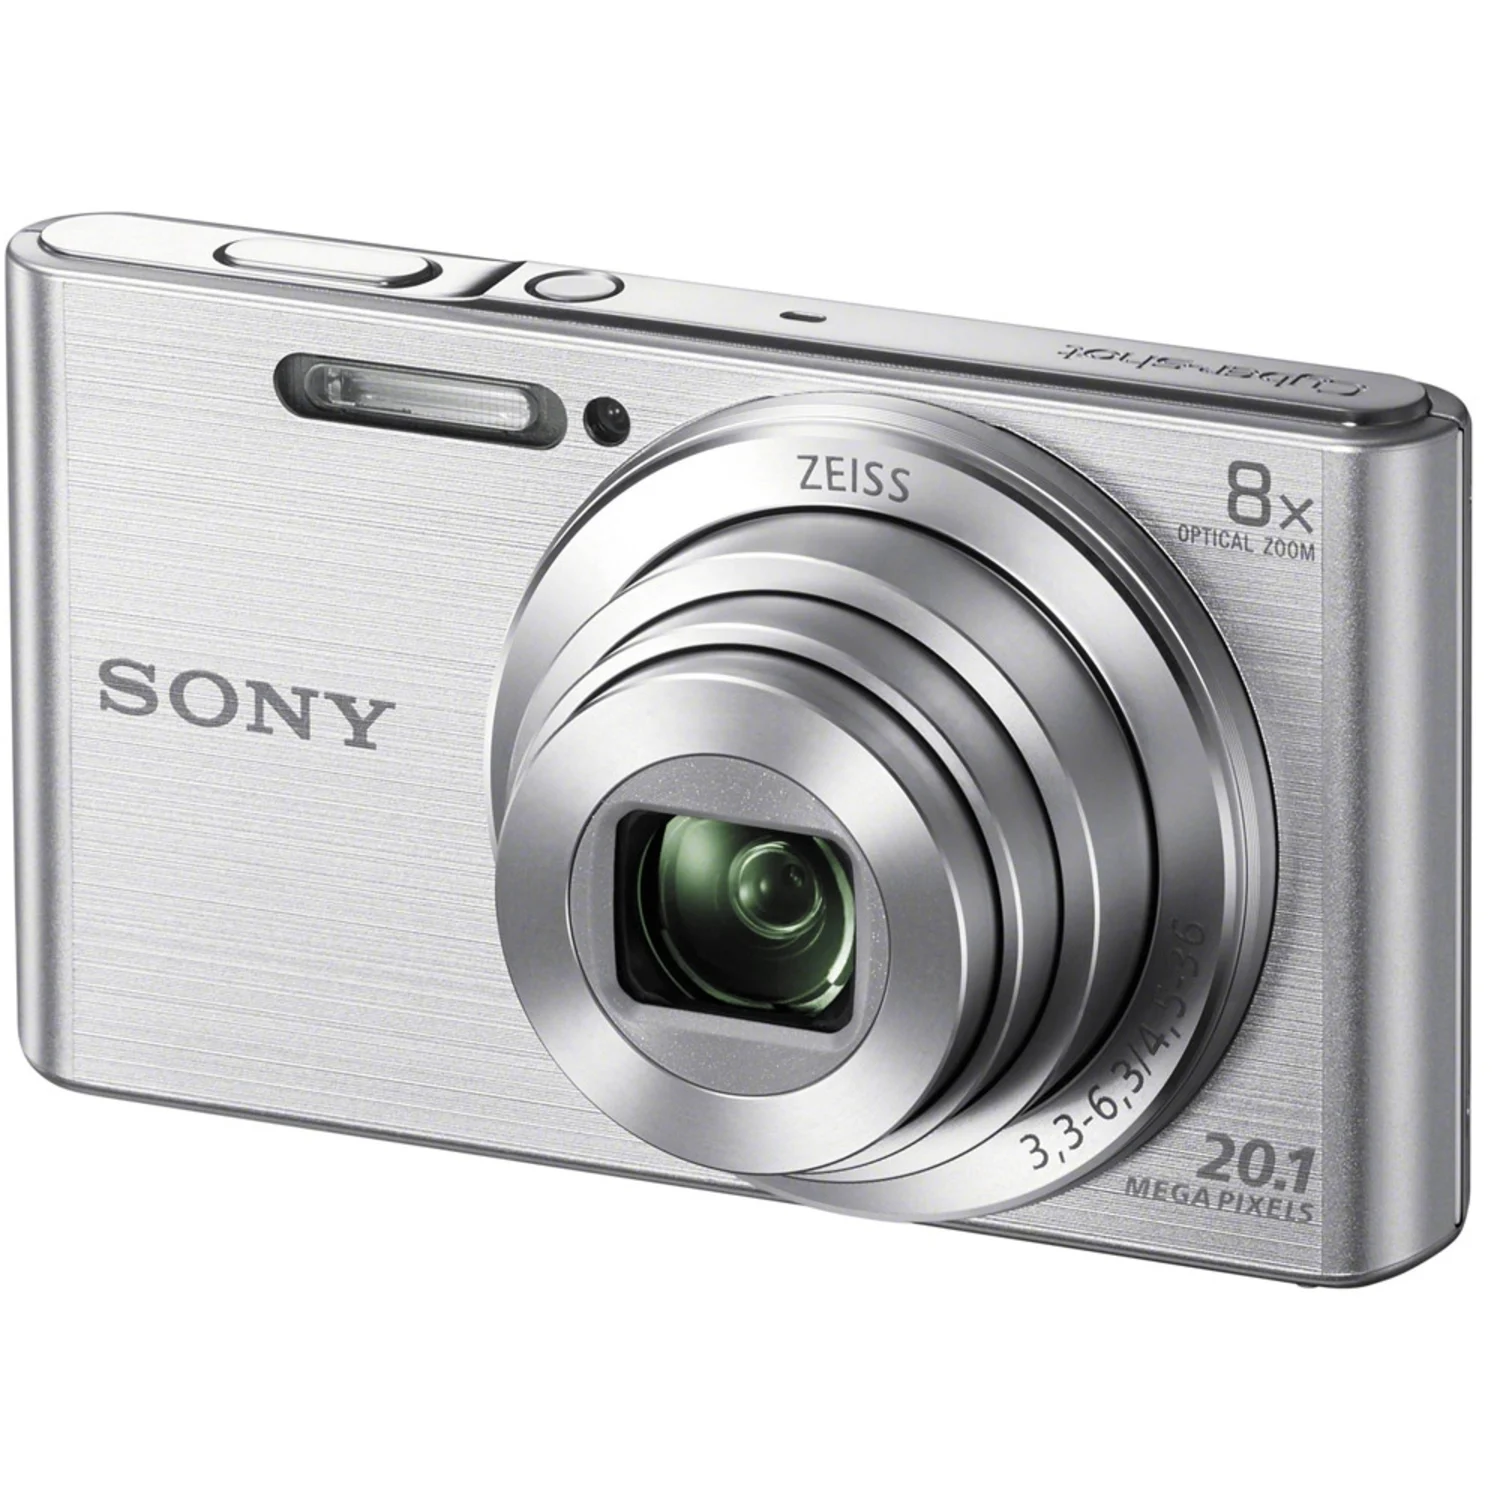 Camera Digital Sony Dsc-W830 Prata